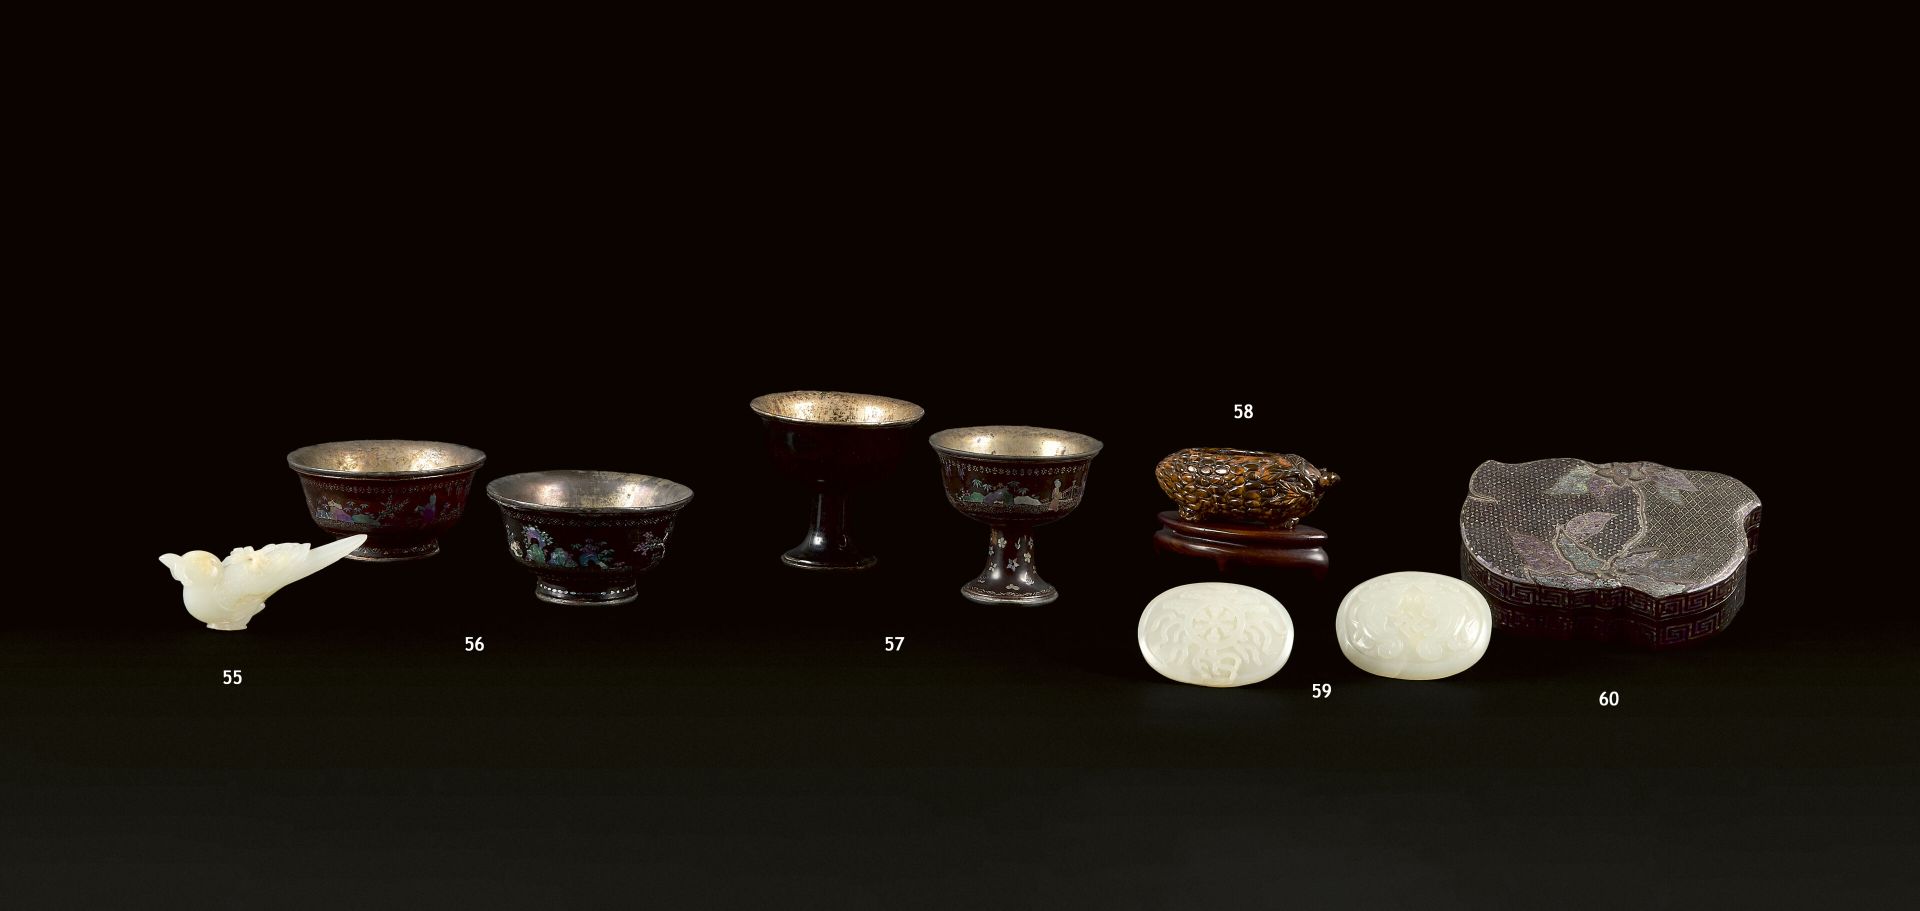 Null CHINA - 19. Jahrhundert
Gruppe aus Seladon-Jade (Nephrit) mit leicht rostro&hellip;